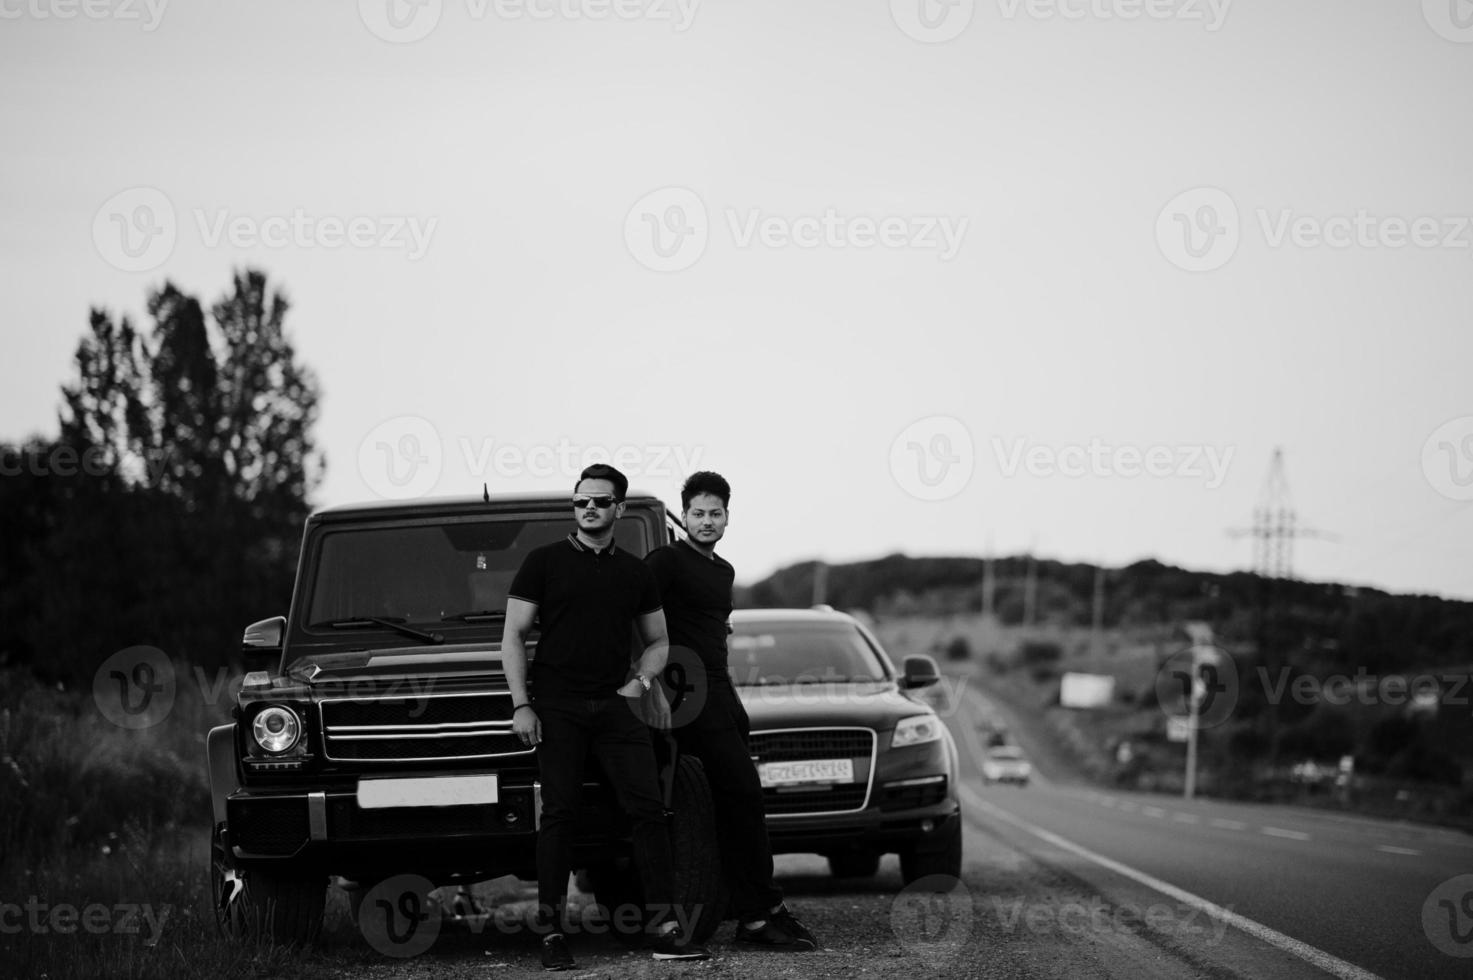 deux frères asiatiques portent un homme tout noir posé près de voitures suv. photo